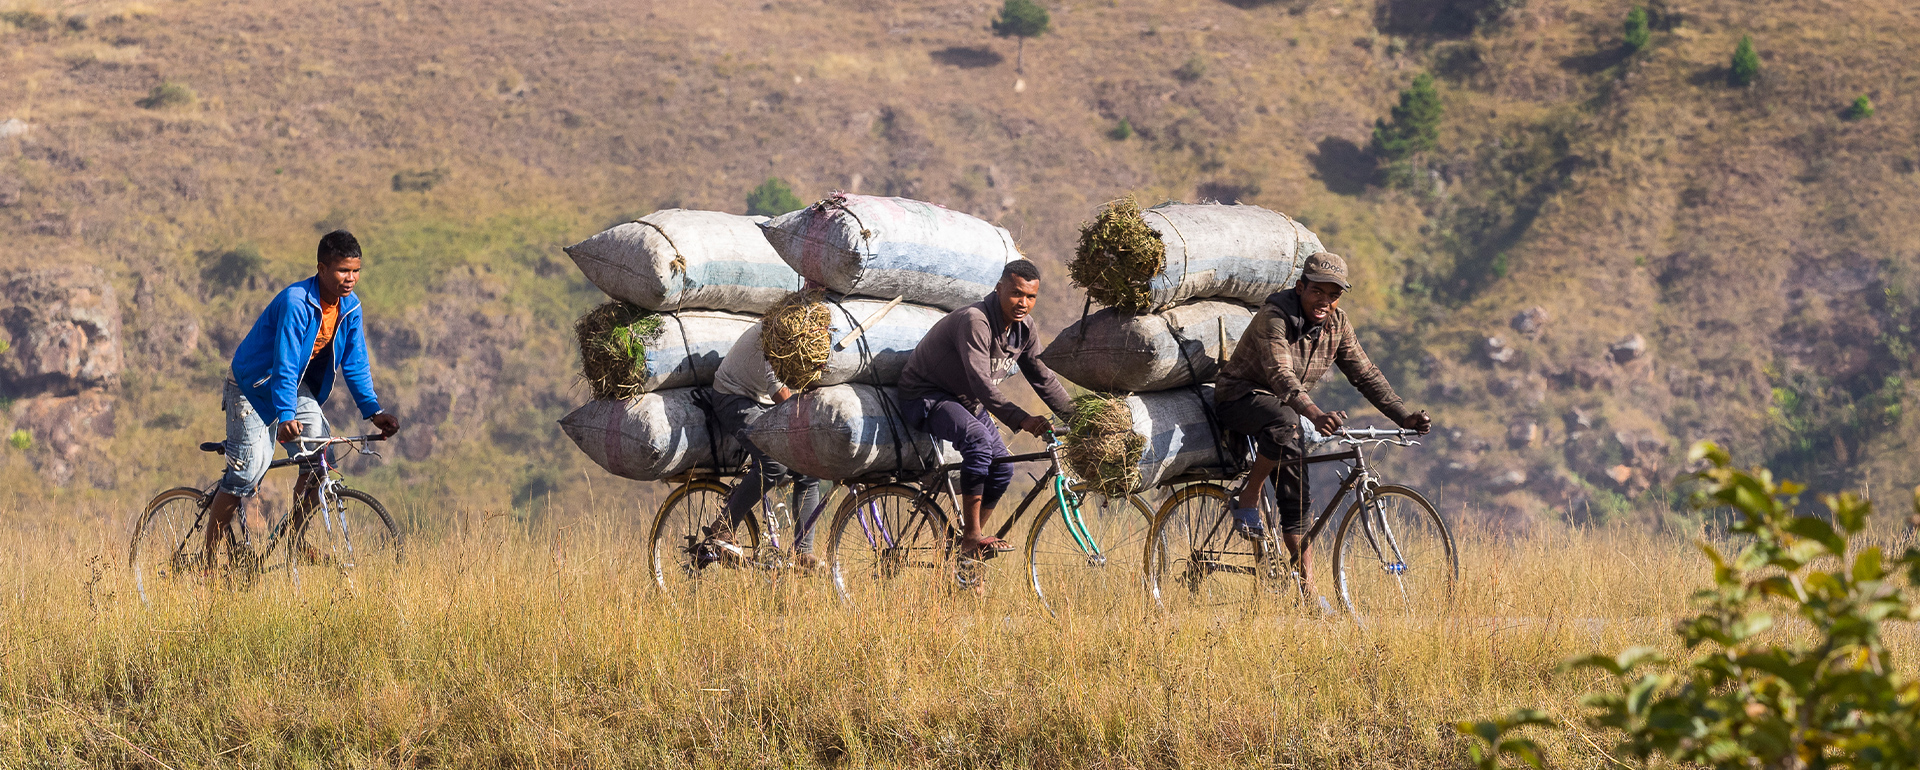 Bikereise in Madagaskar - Begegnungen unterwegs